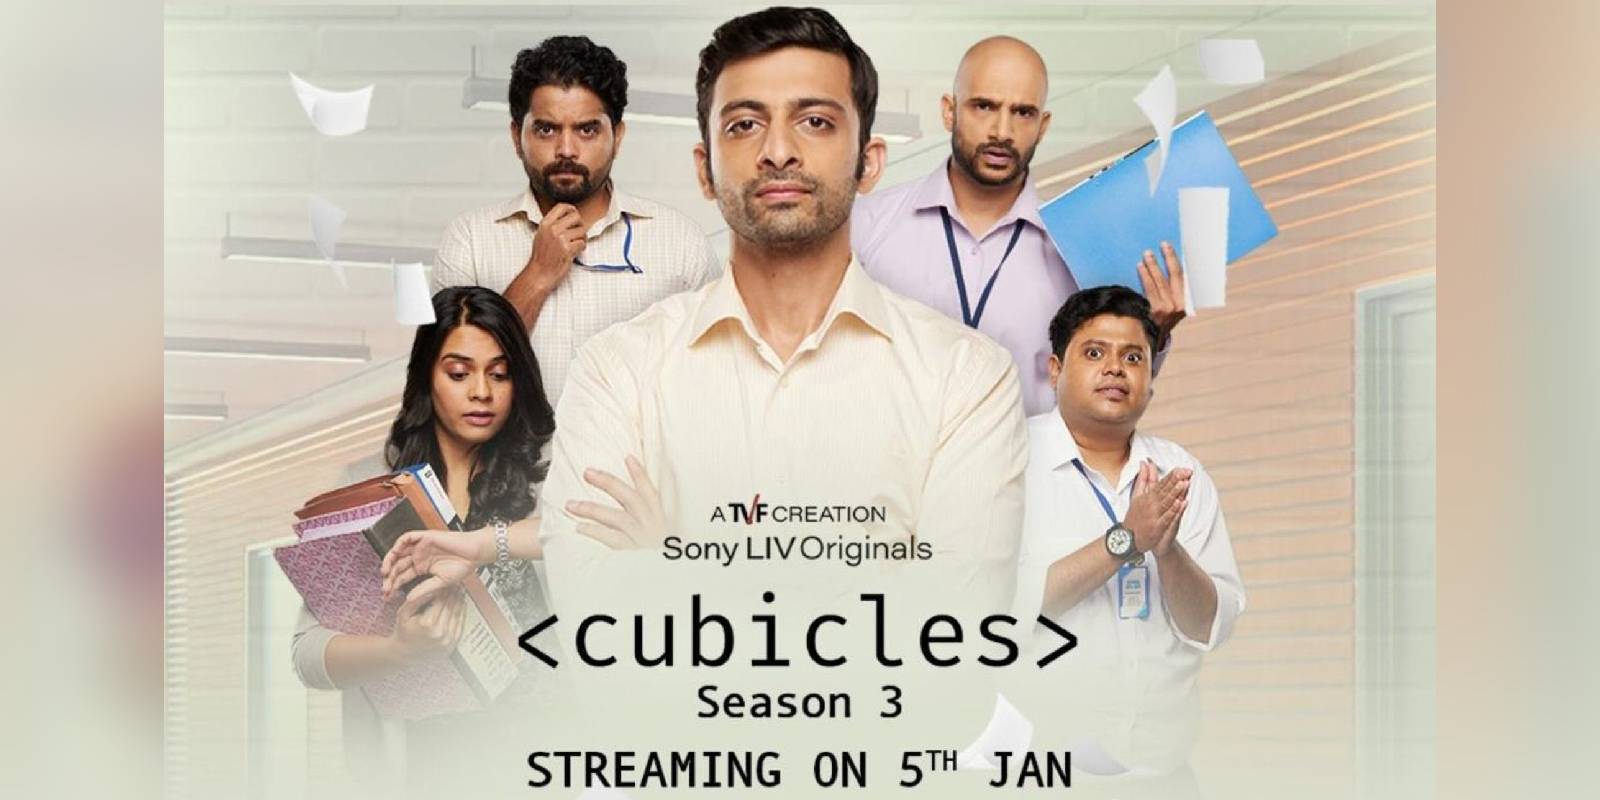 Cubicles season 3